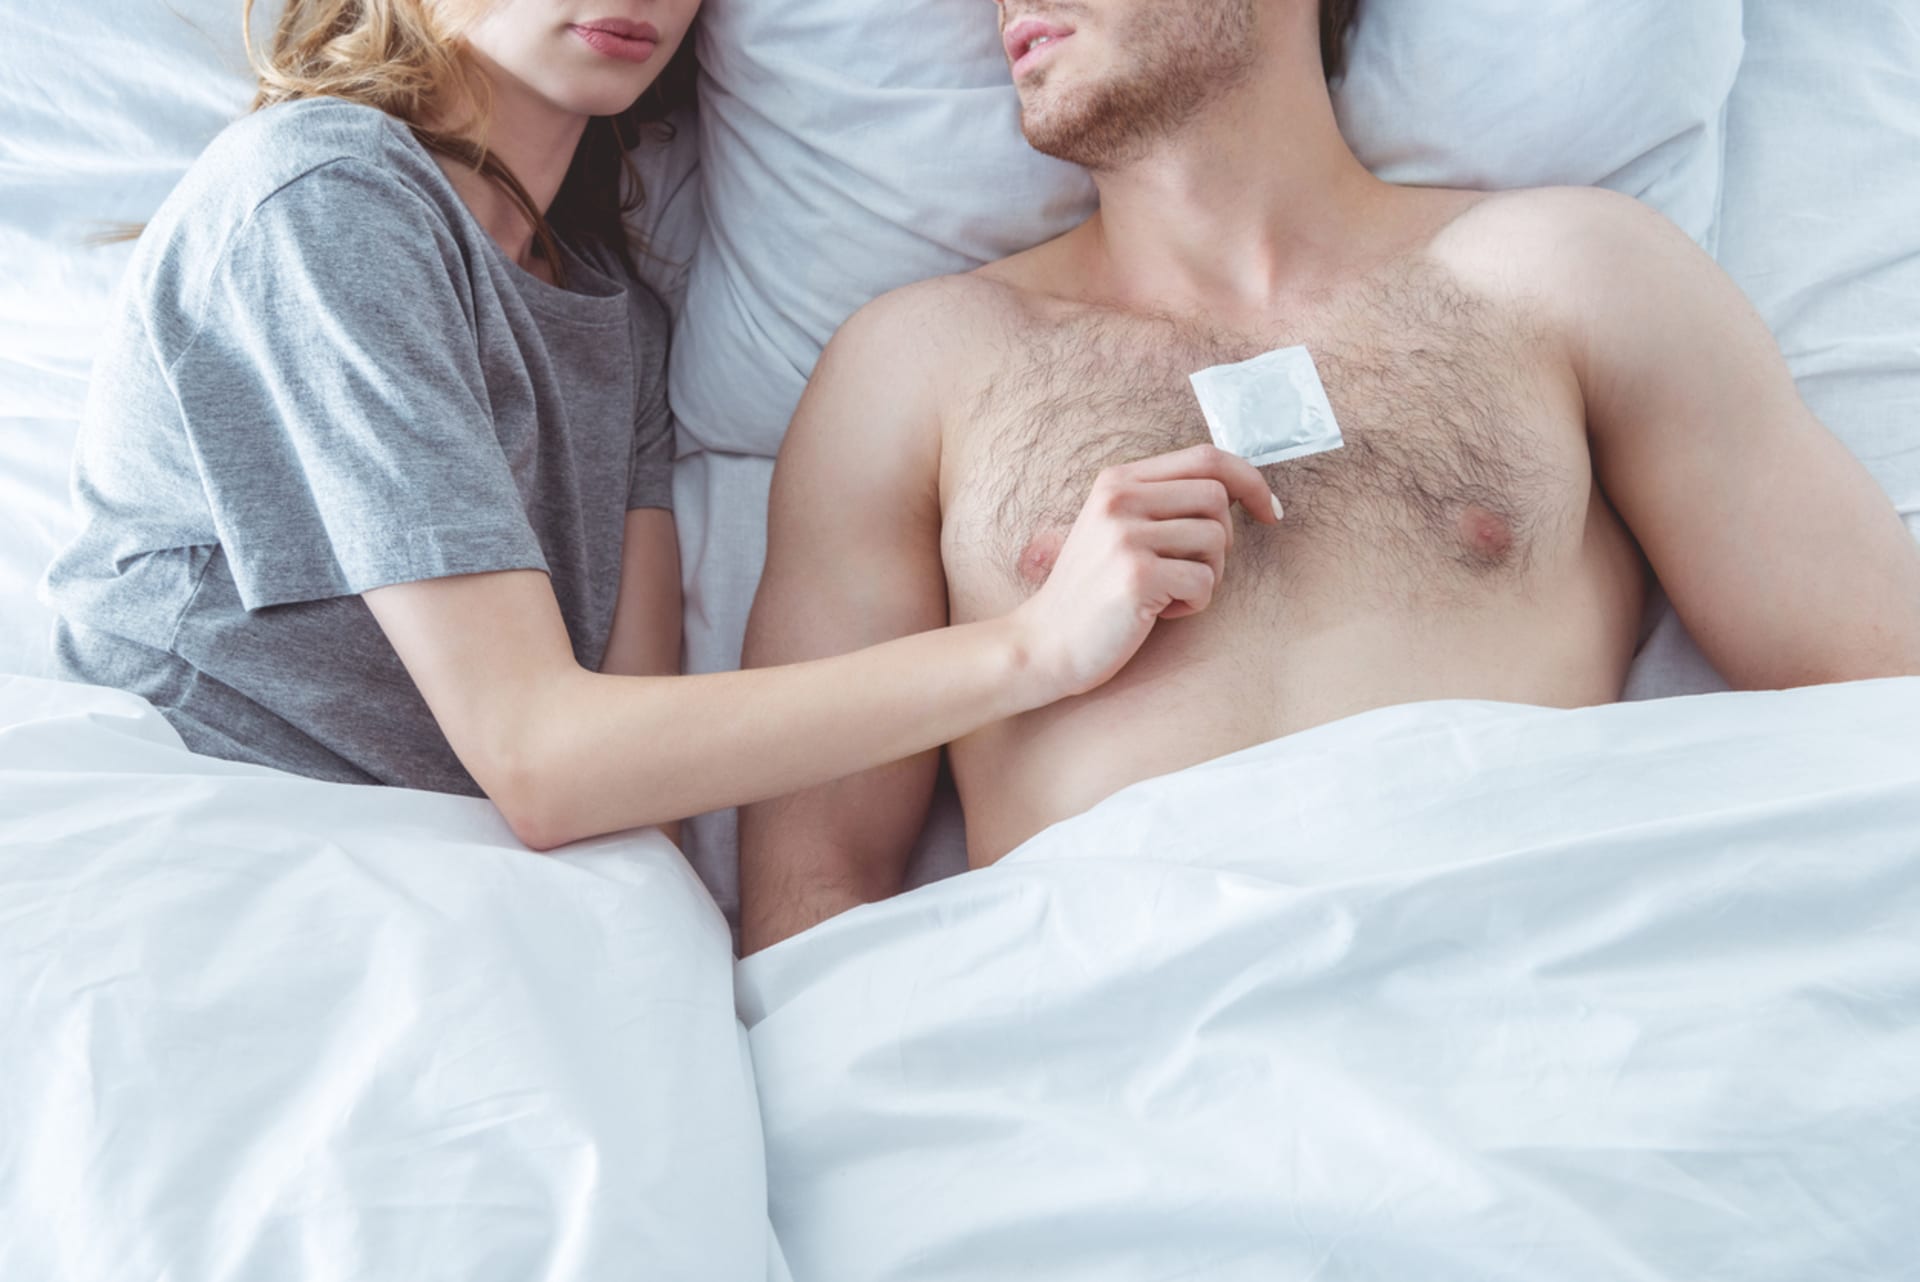 Sundávání kondomu bez souhlasu partnera bude nelegální